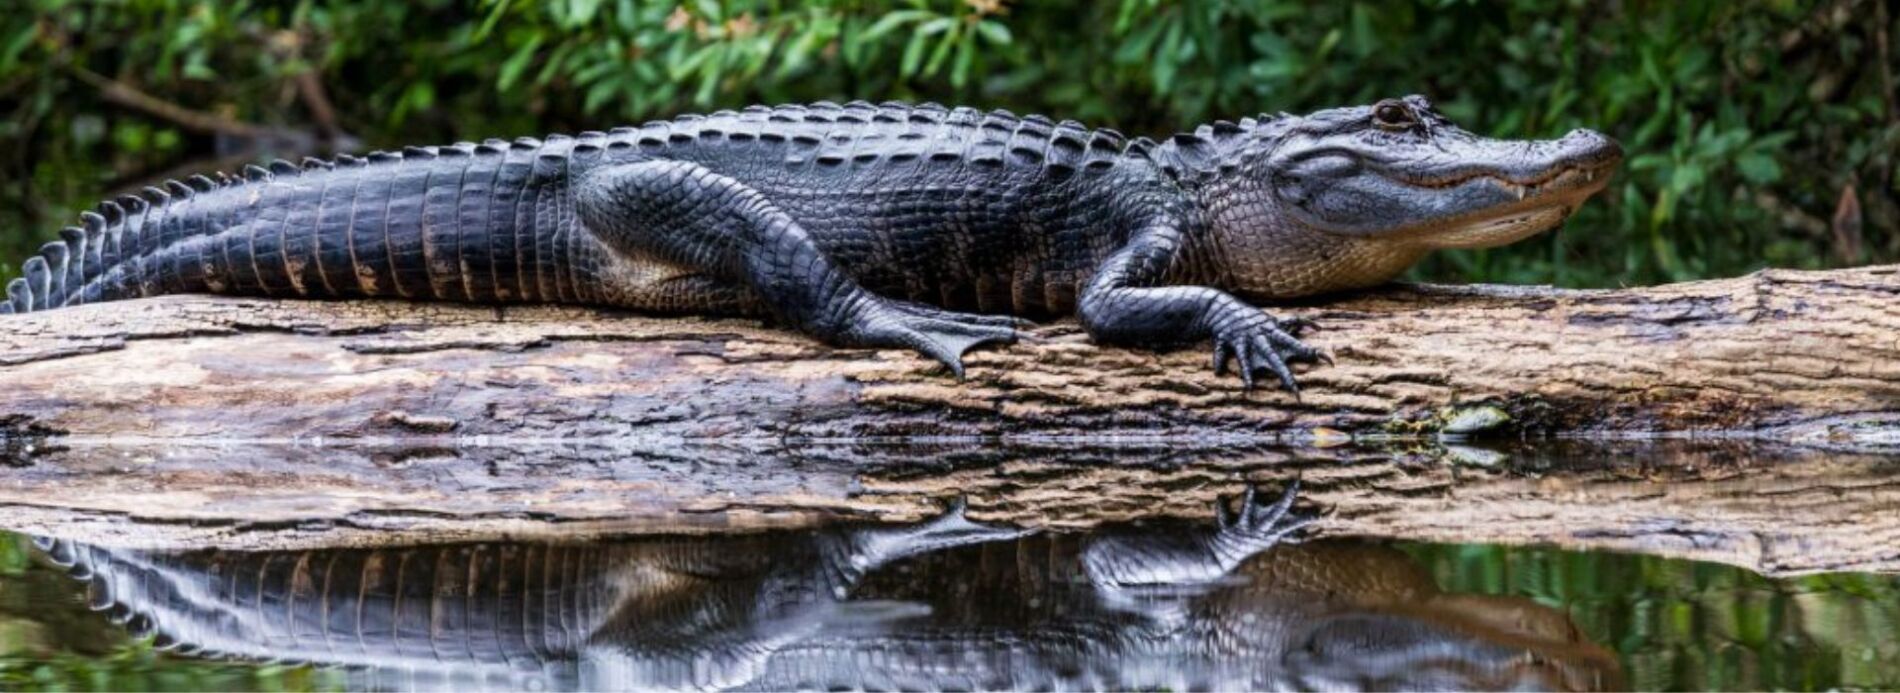 alligator sunning on a log